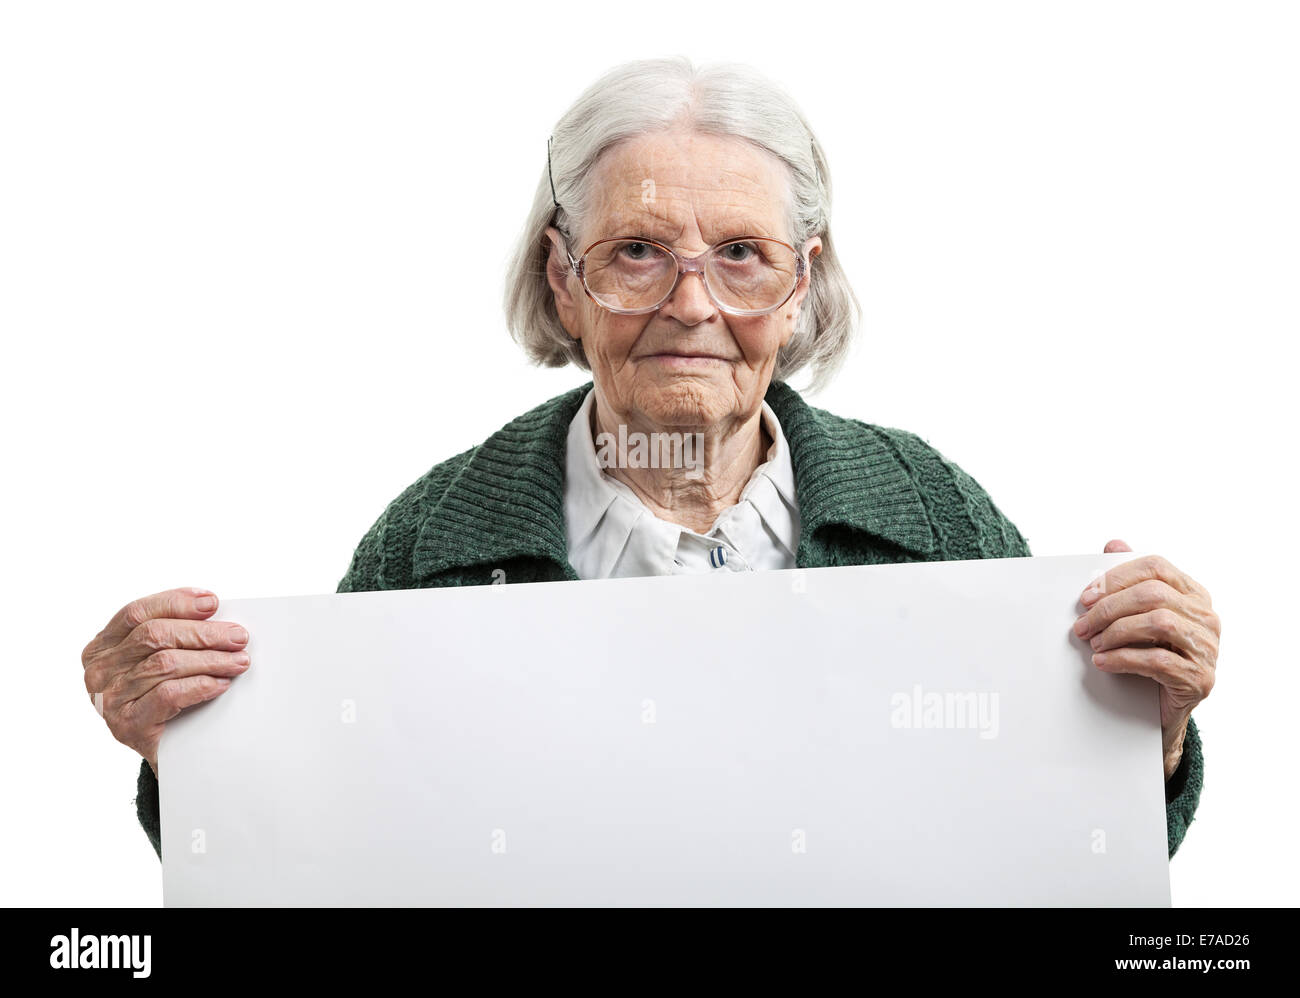 Heureux vieille dame tenant une feuille vierge dans la main sur fond blanc Banque D'Images